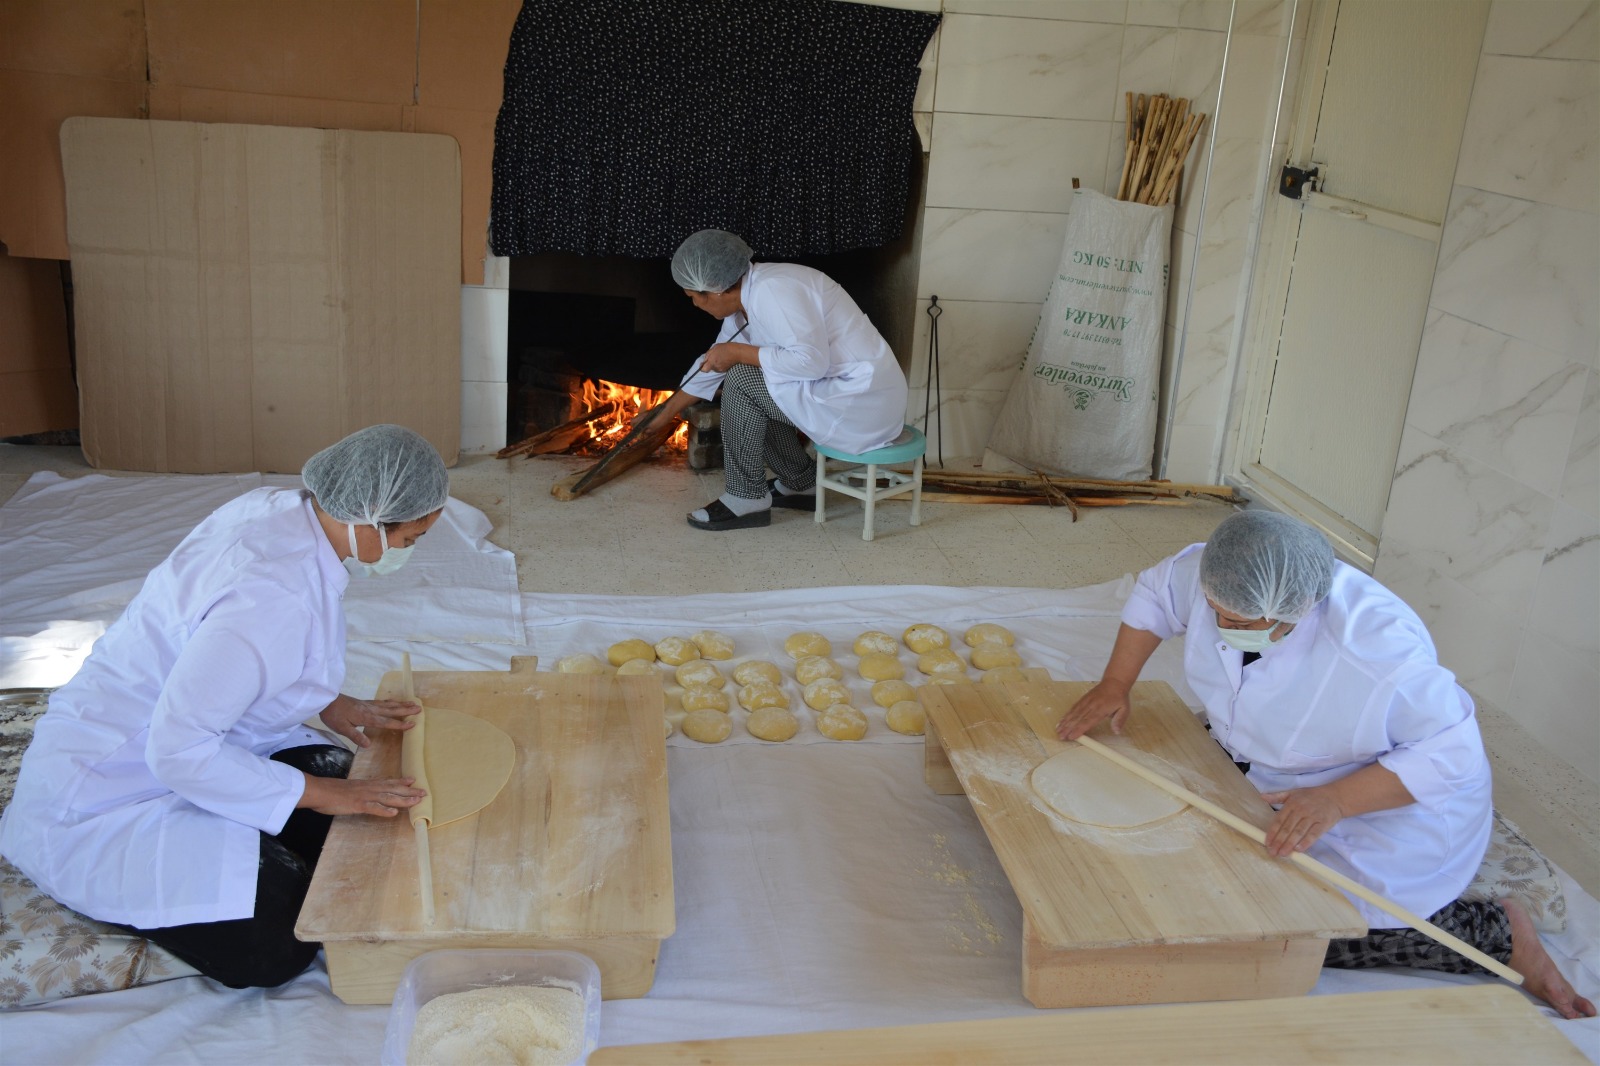  Zile Belediyesi, Girişimcilik ve Üretime Destek İçin Ekmeklik Fırın Binasını Tamamladı